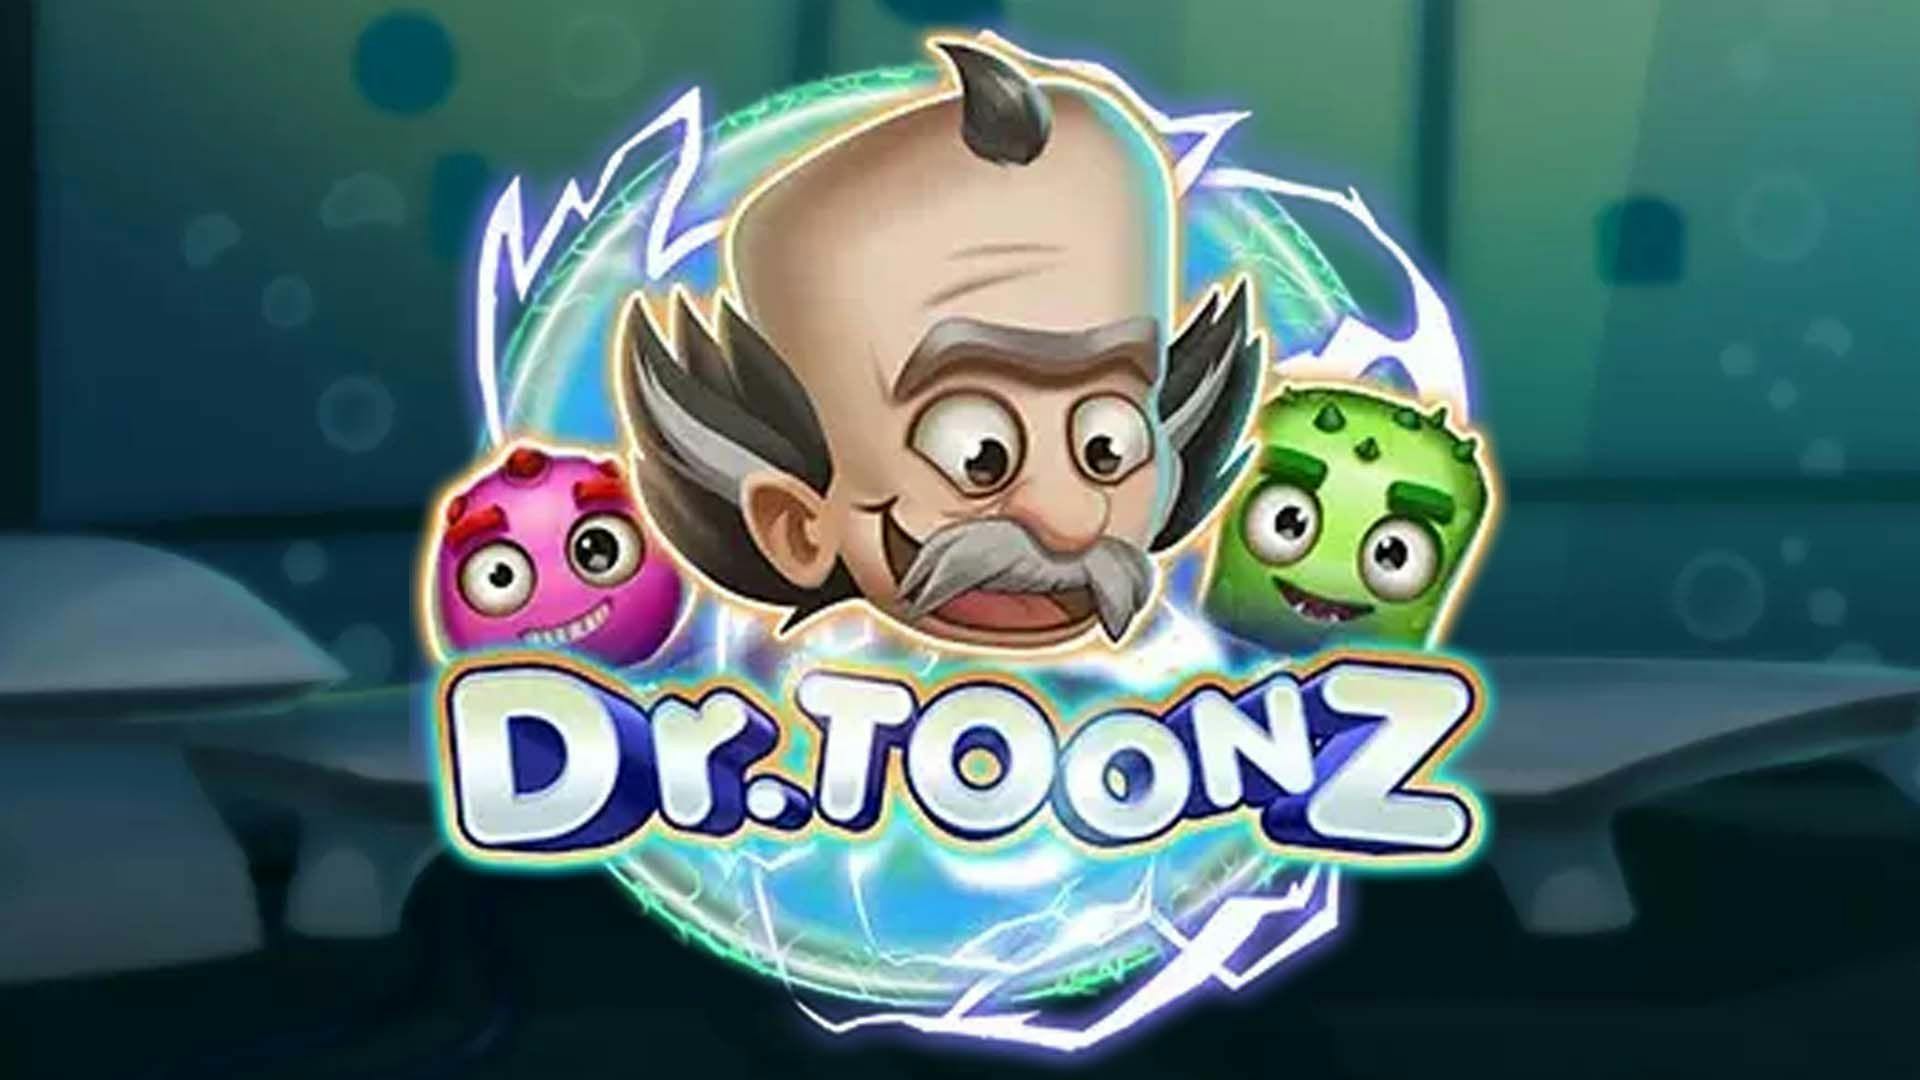 Dr Toonz  Slot Machine Online Free Demo